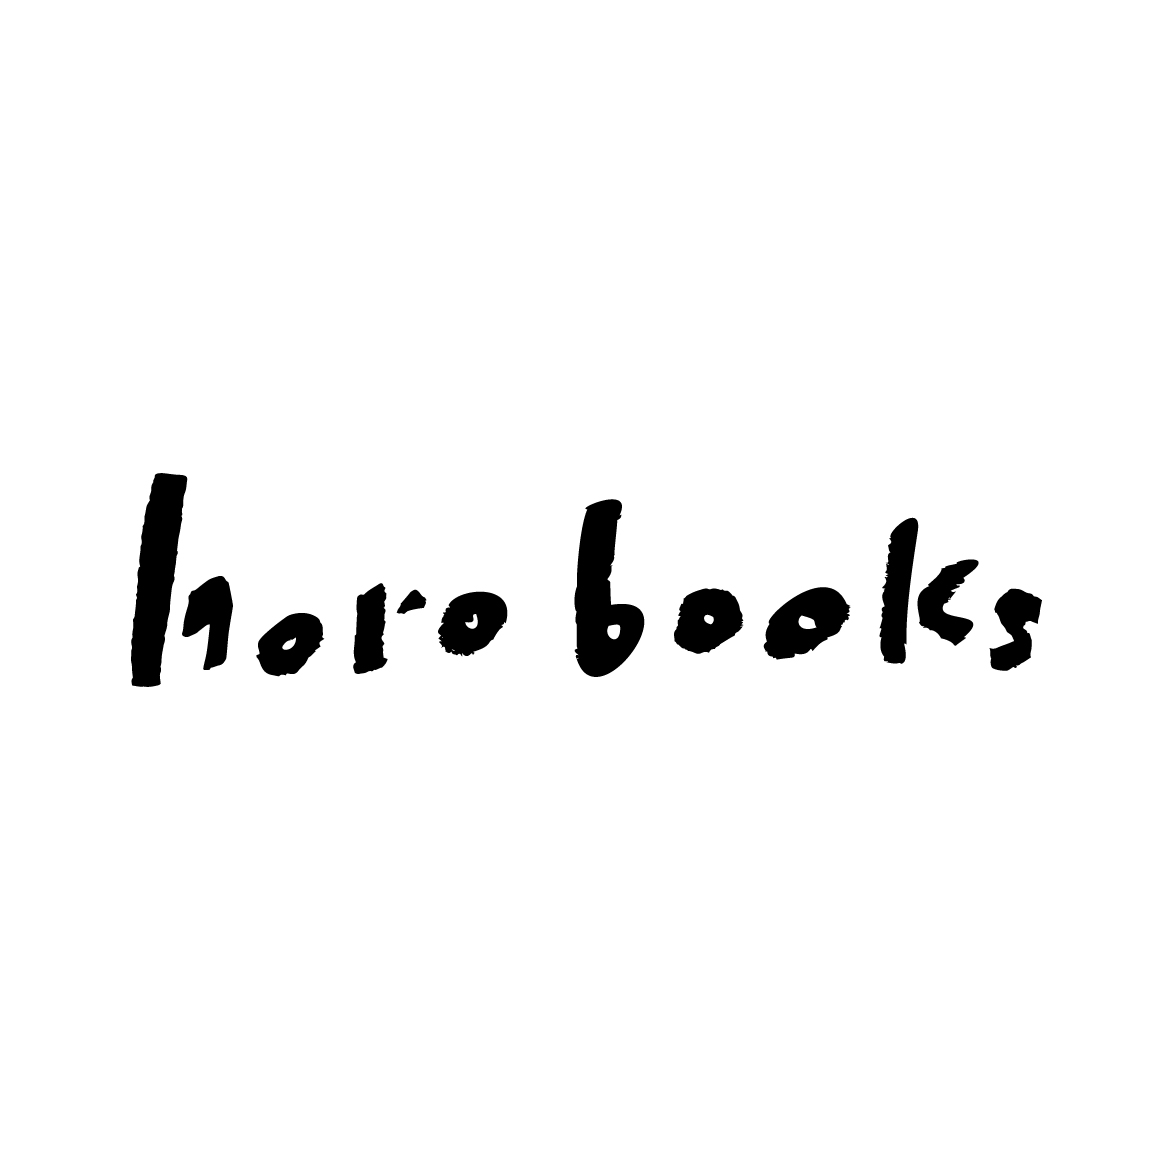 horo books HP